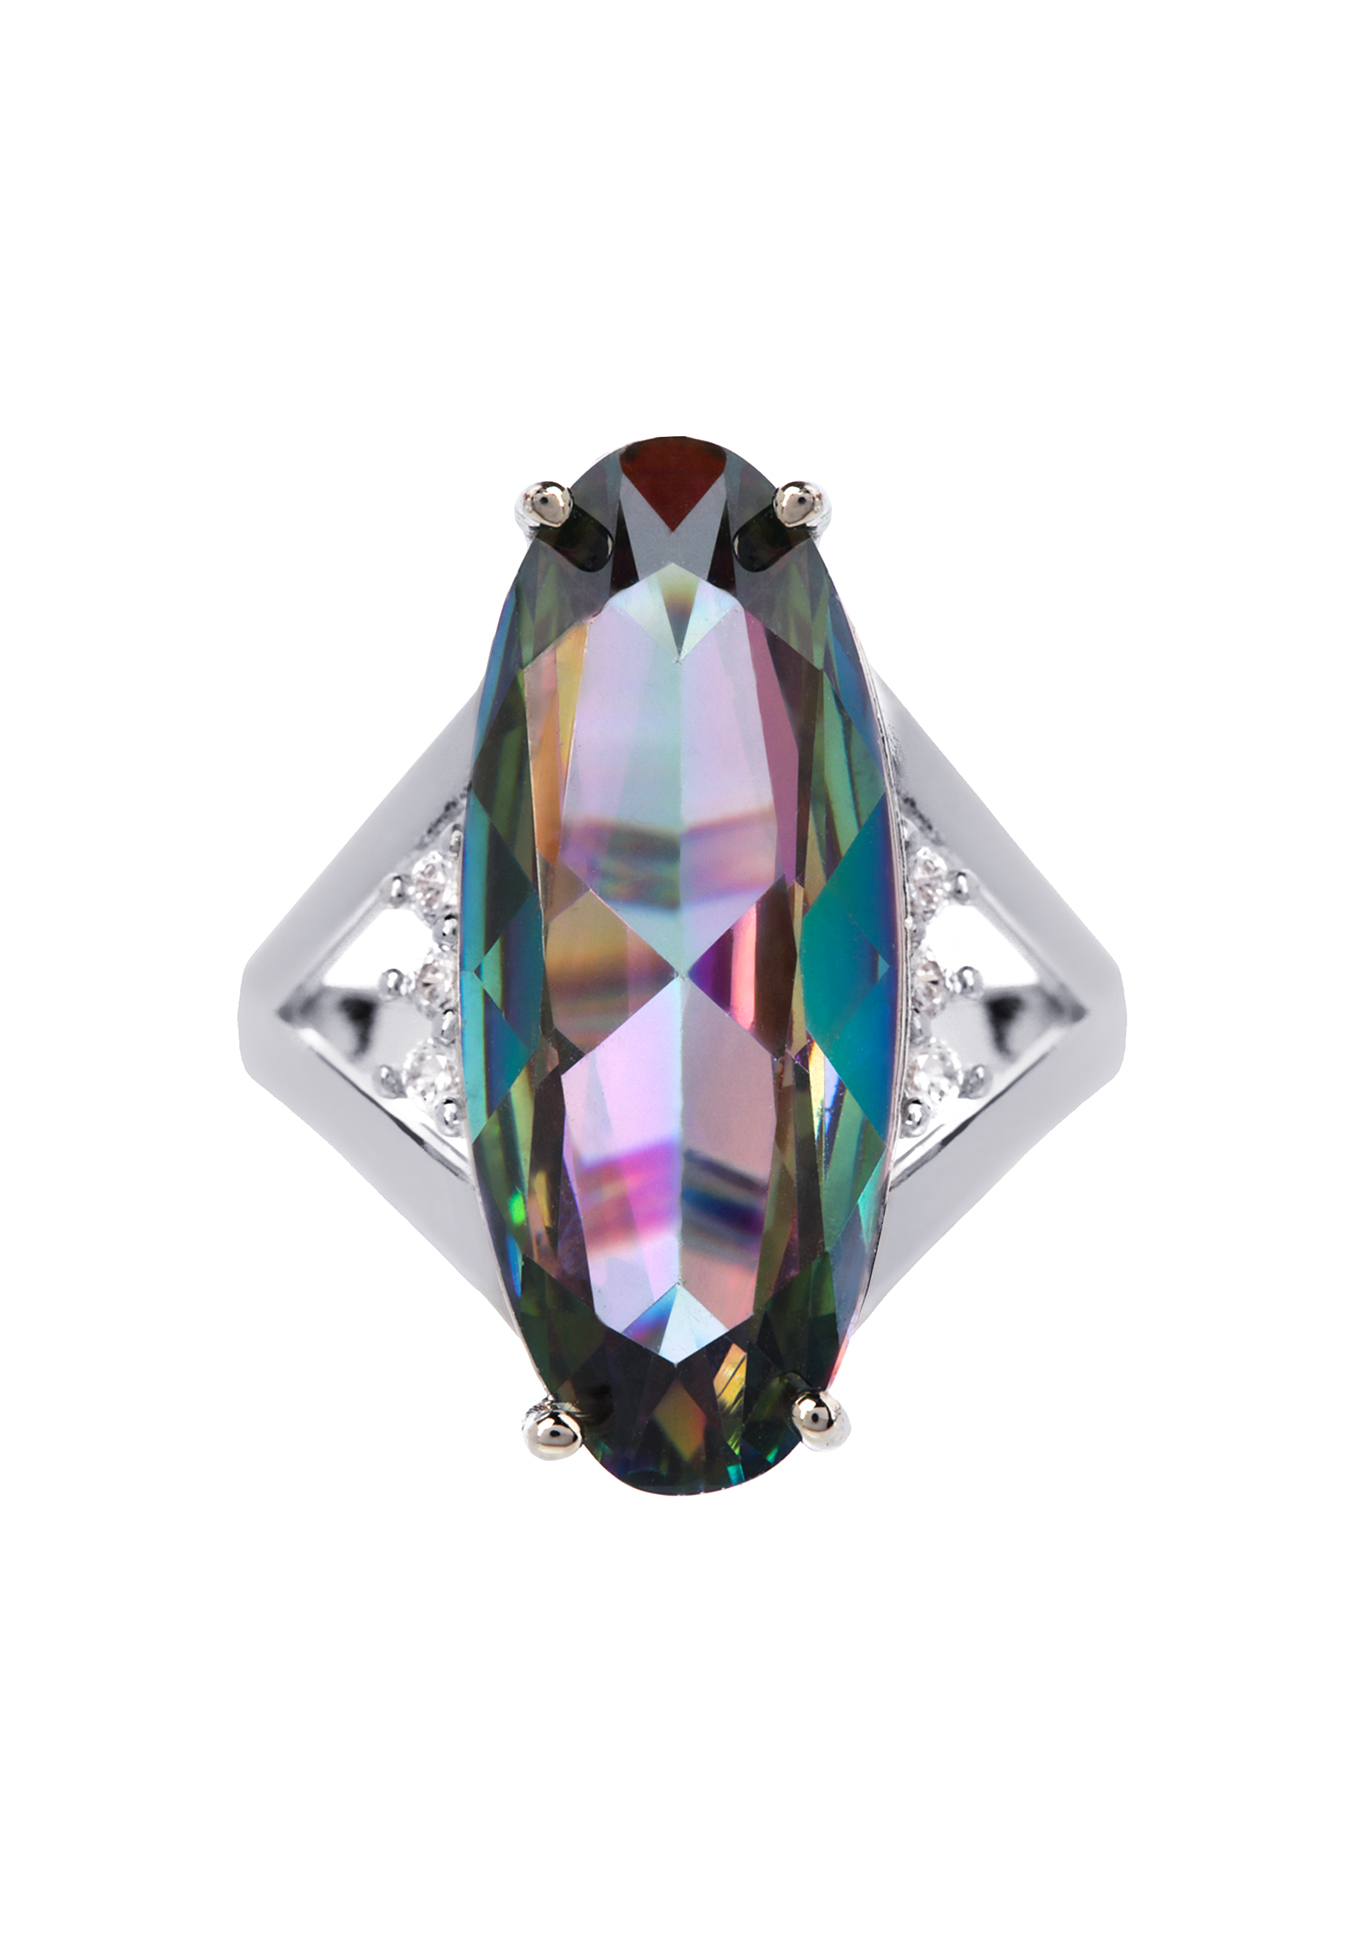 Комплект "Лианелия" Бриллианит Натюр, цвет мультиколор, размер 18 перстень, подвески - фото 4